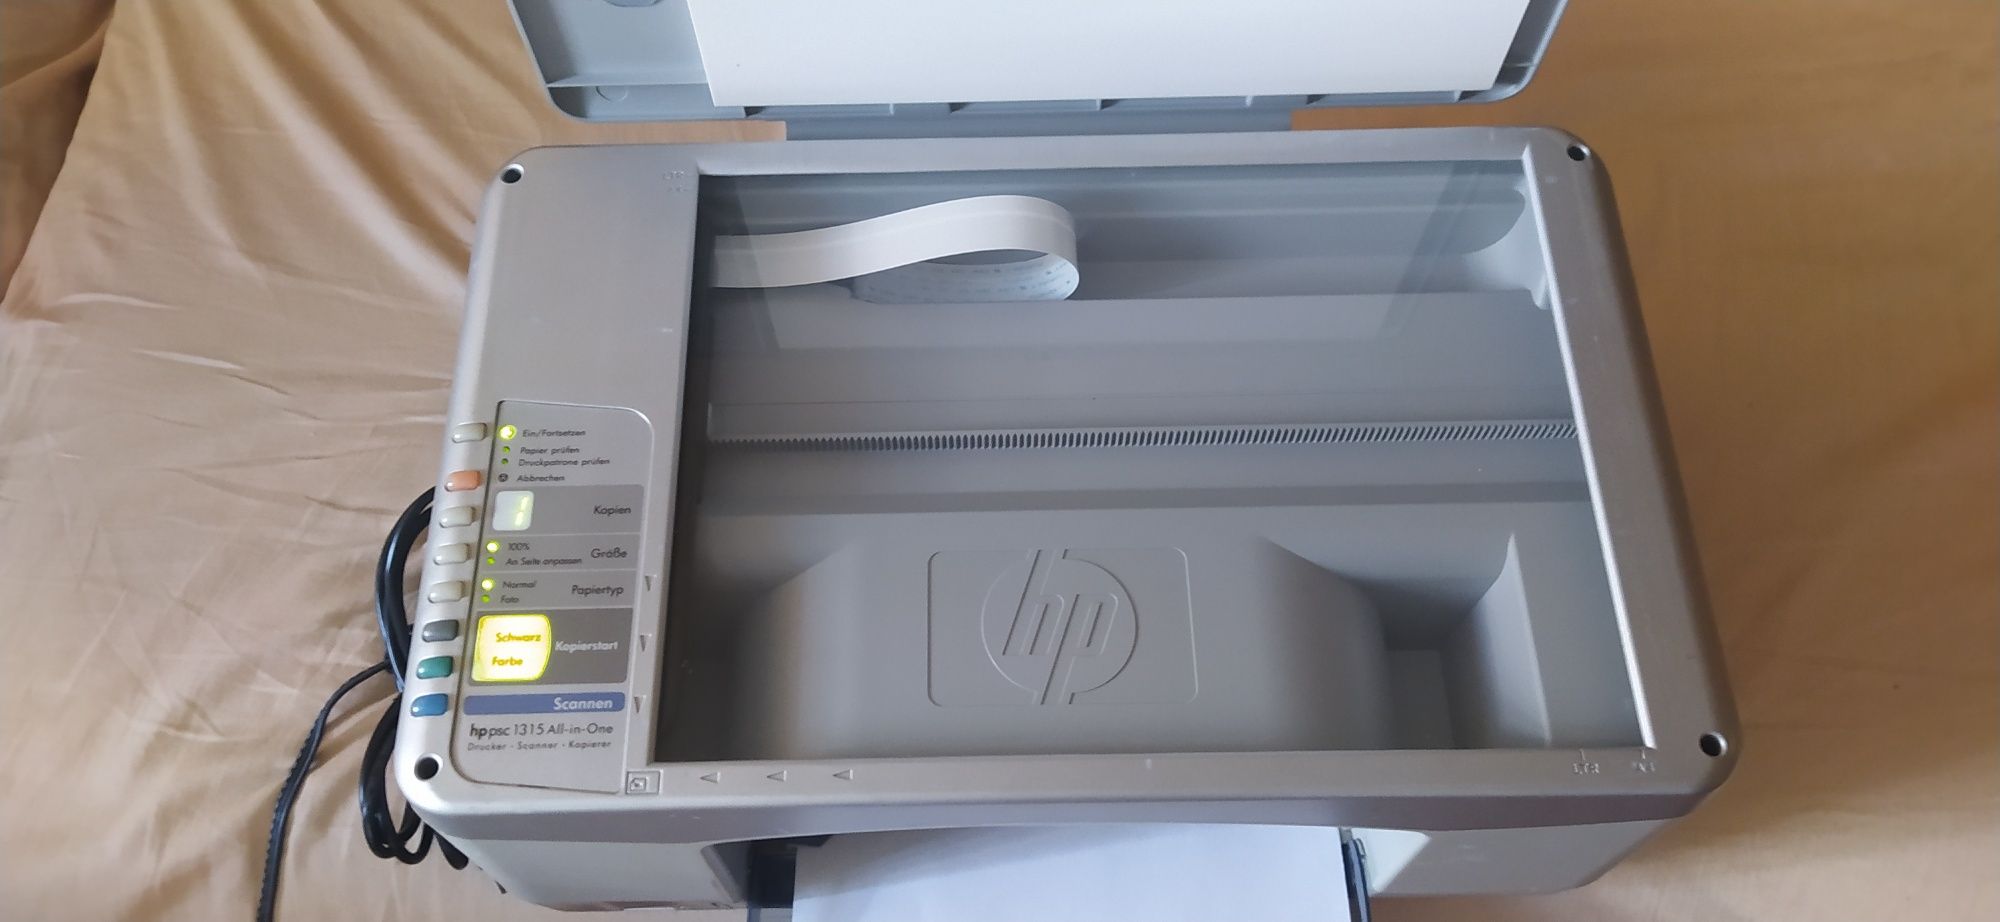 Продам принтер HP ps1315